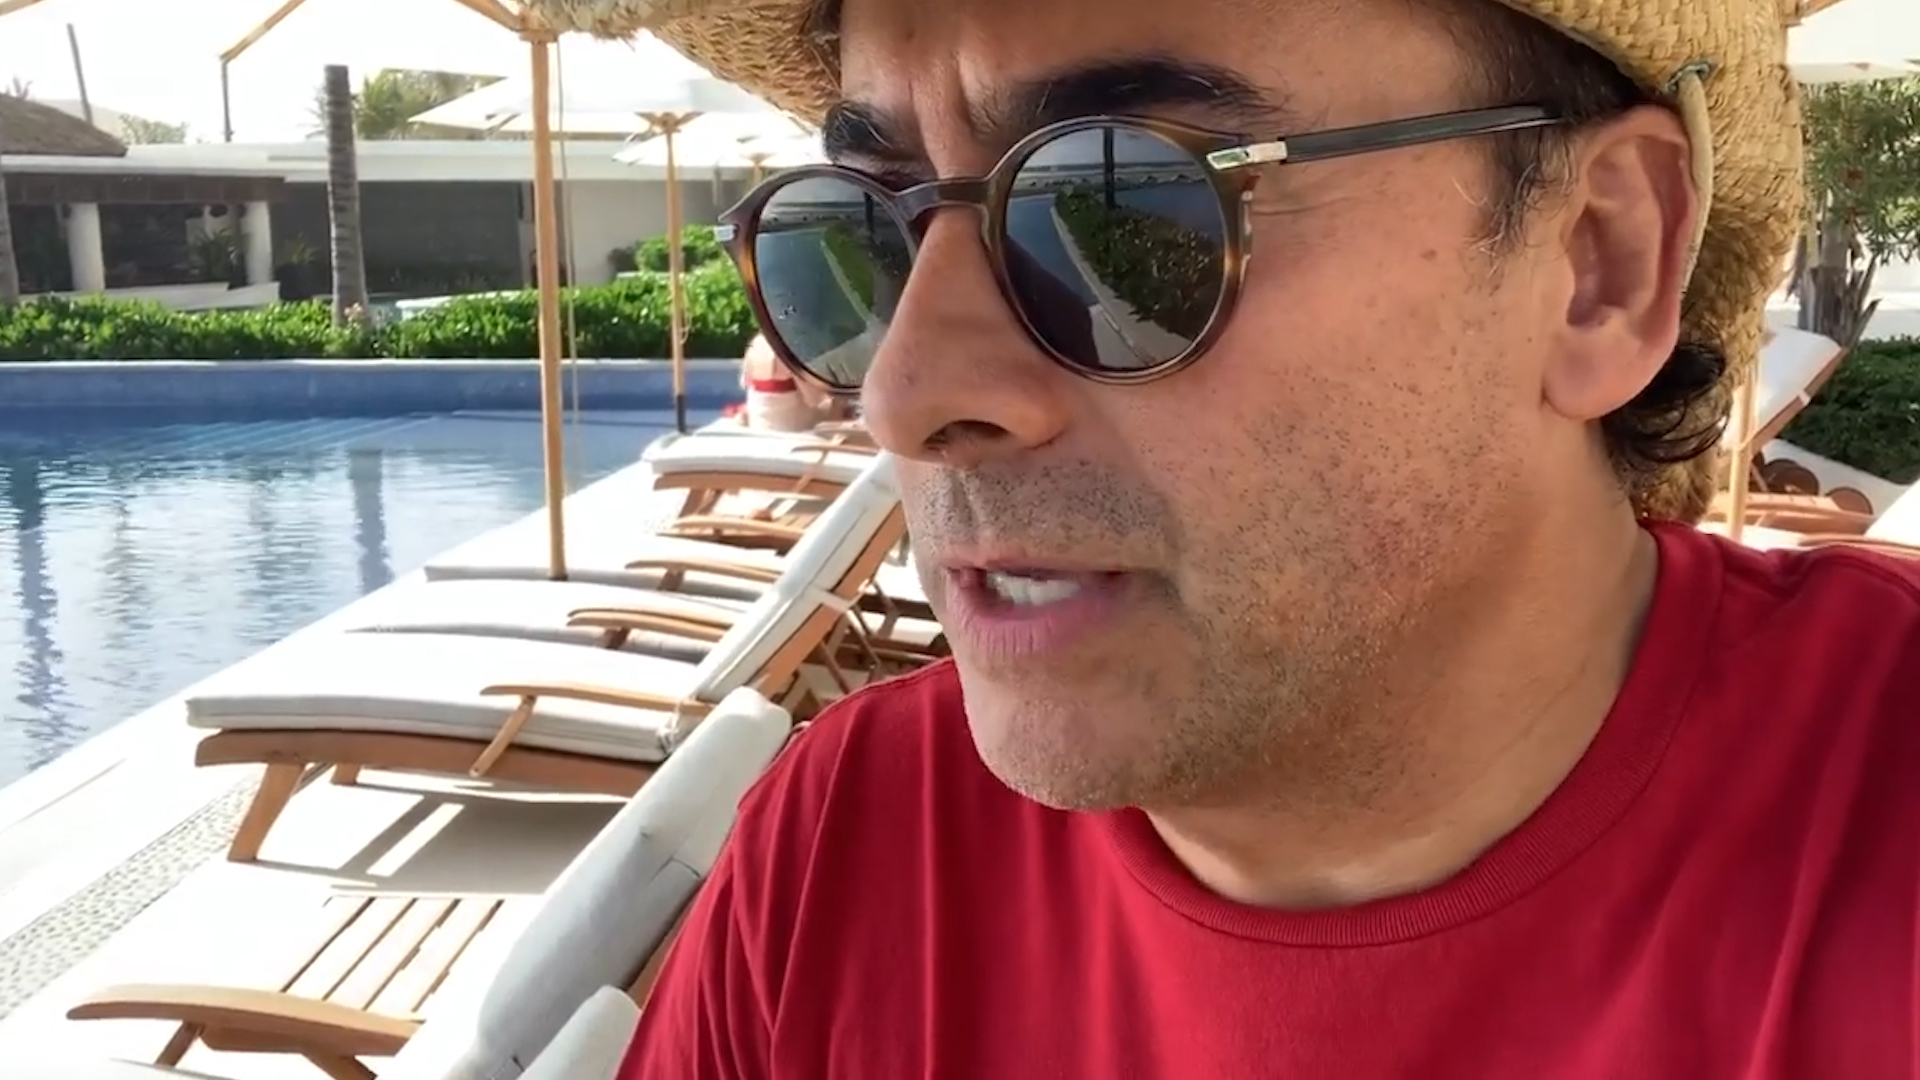 Poncho de Nigris explica qué pasó con Adal Ramones tras pelear con él en el  Aeropuerto: “Es como un duende, hasta me da cosita” - Infobae